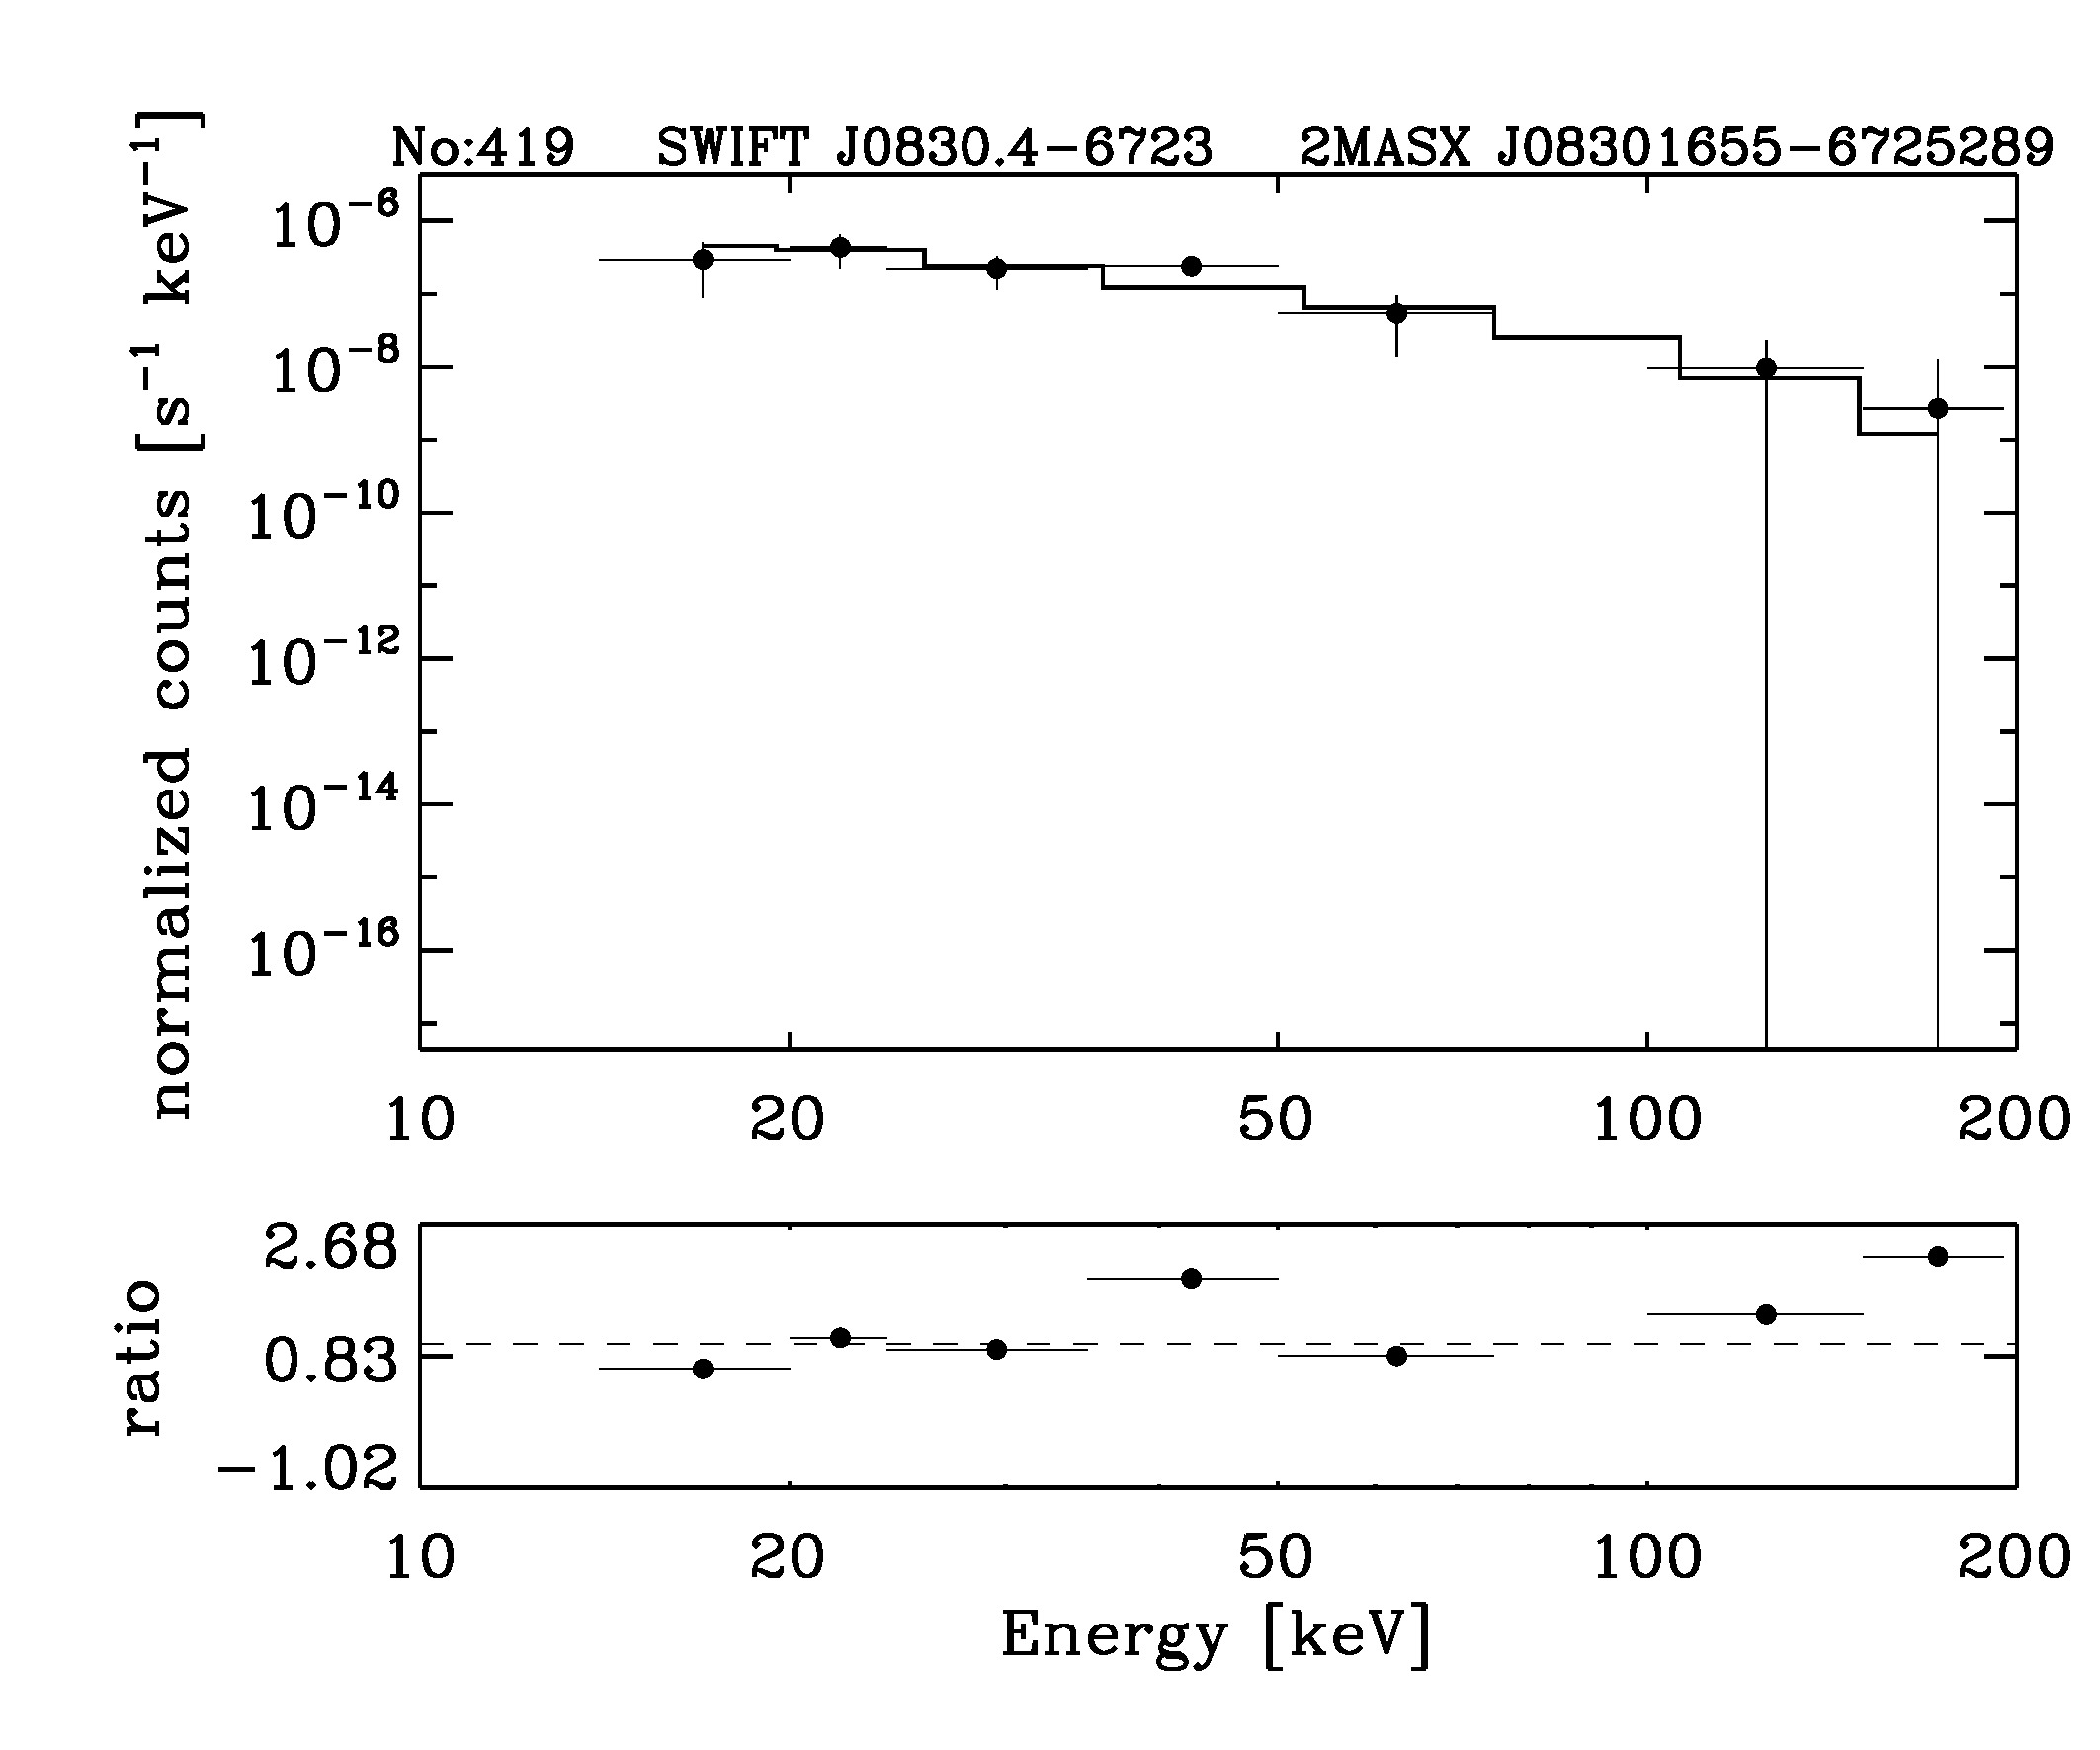 BAT Spectrum for SWIFT J0830.4-6723